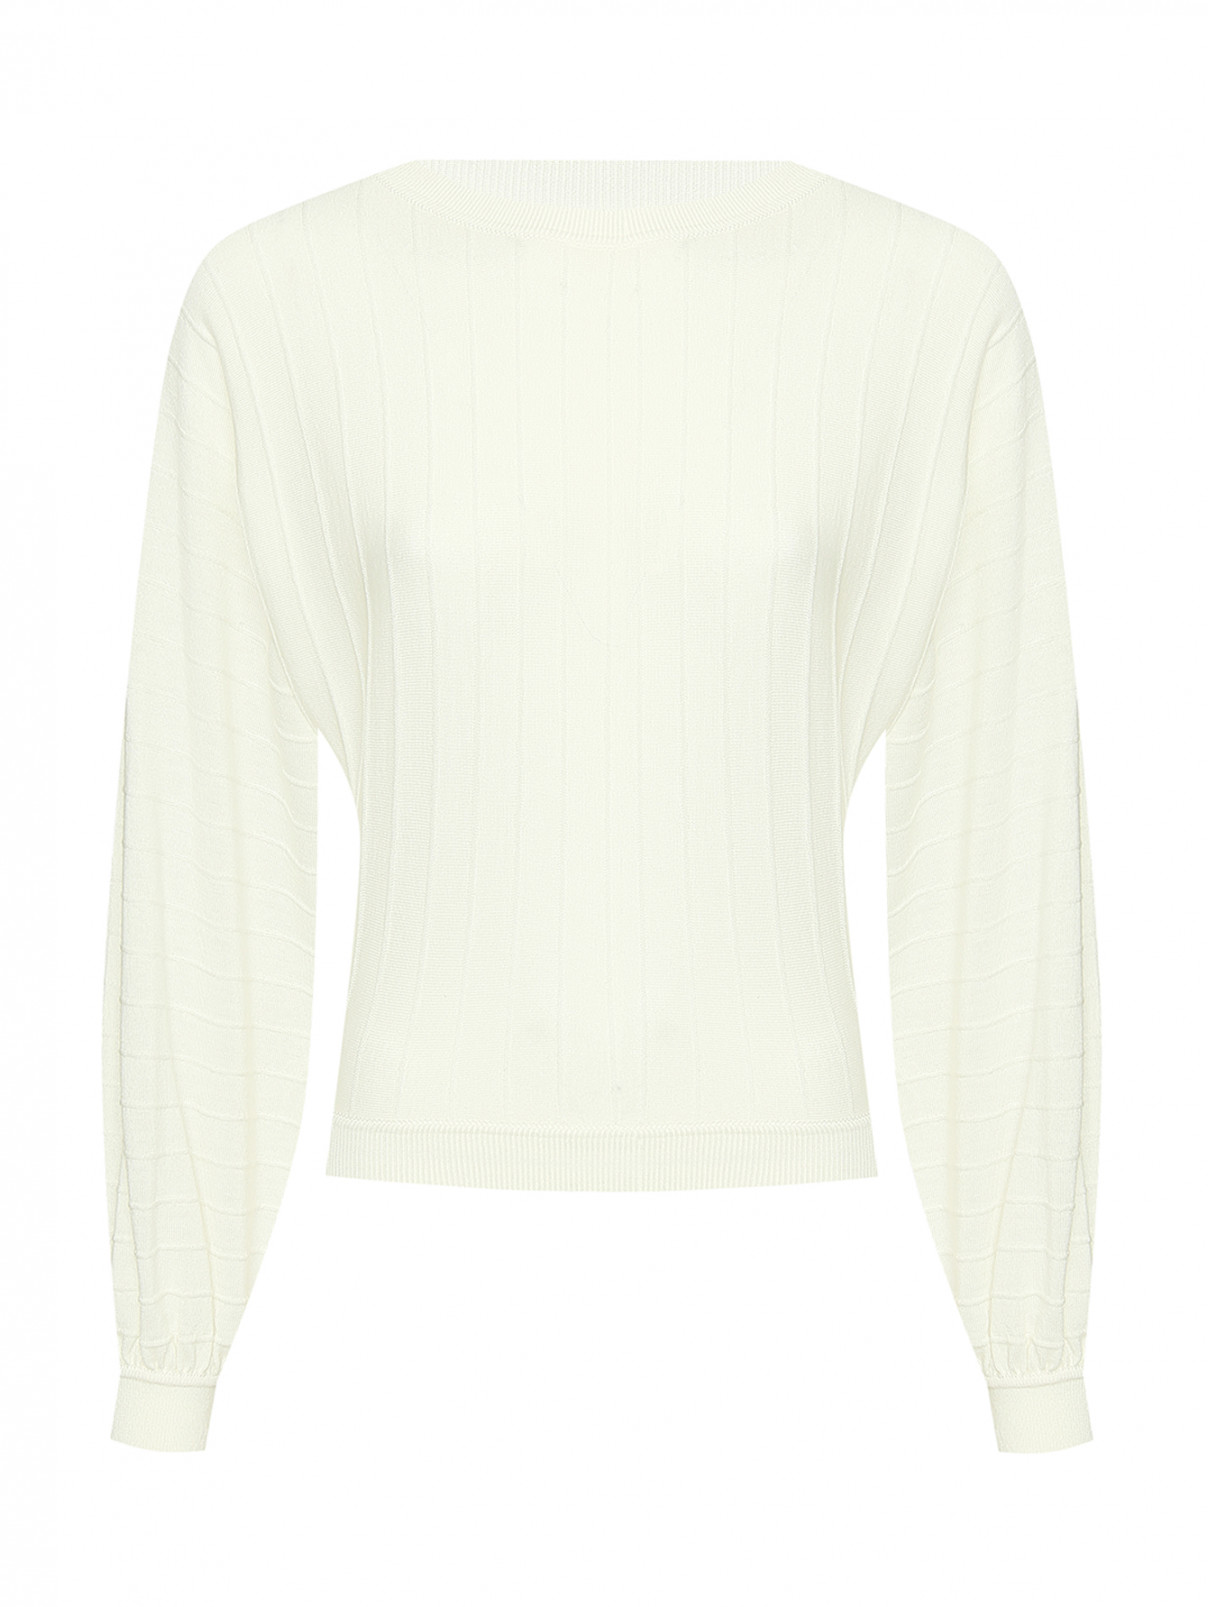 Джемпер однотонный из шерсти Moschino Boutique  –  Общий вид  – Цвет:  Белый